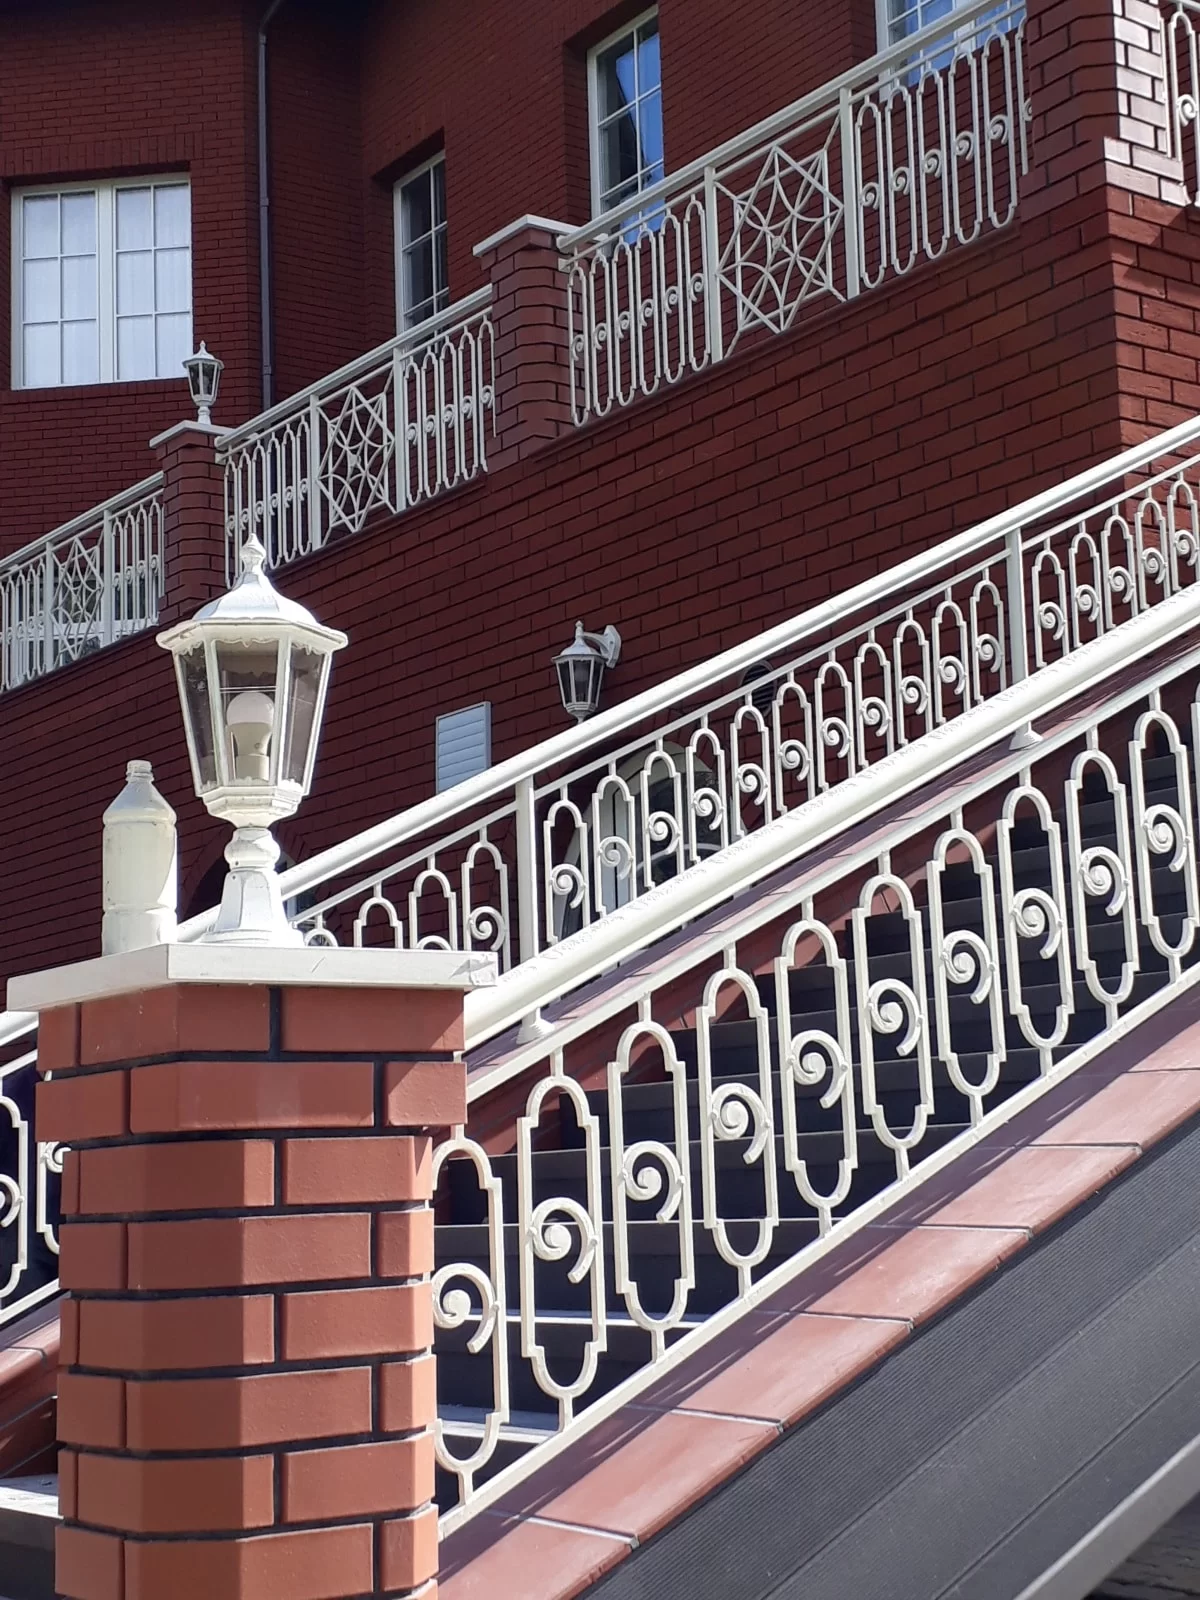 Кованые балконы и террасы